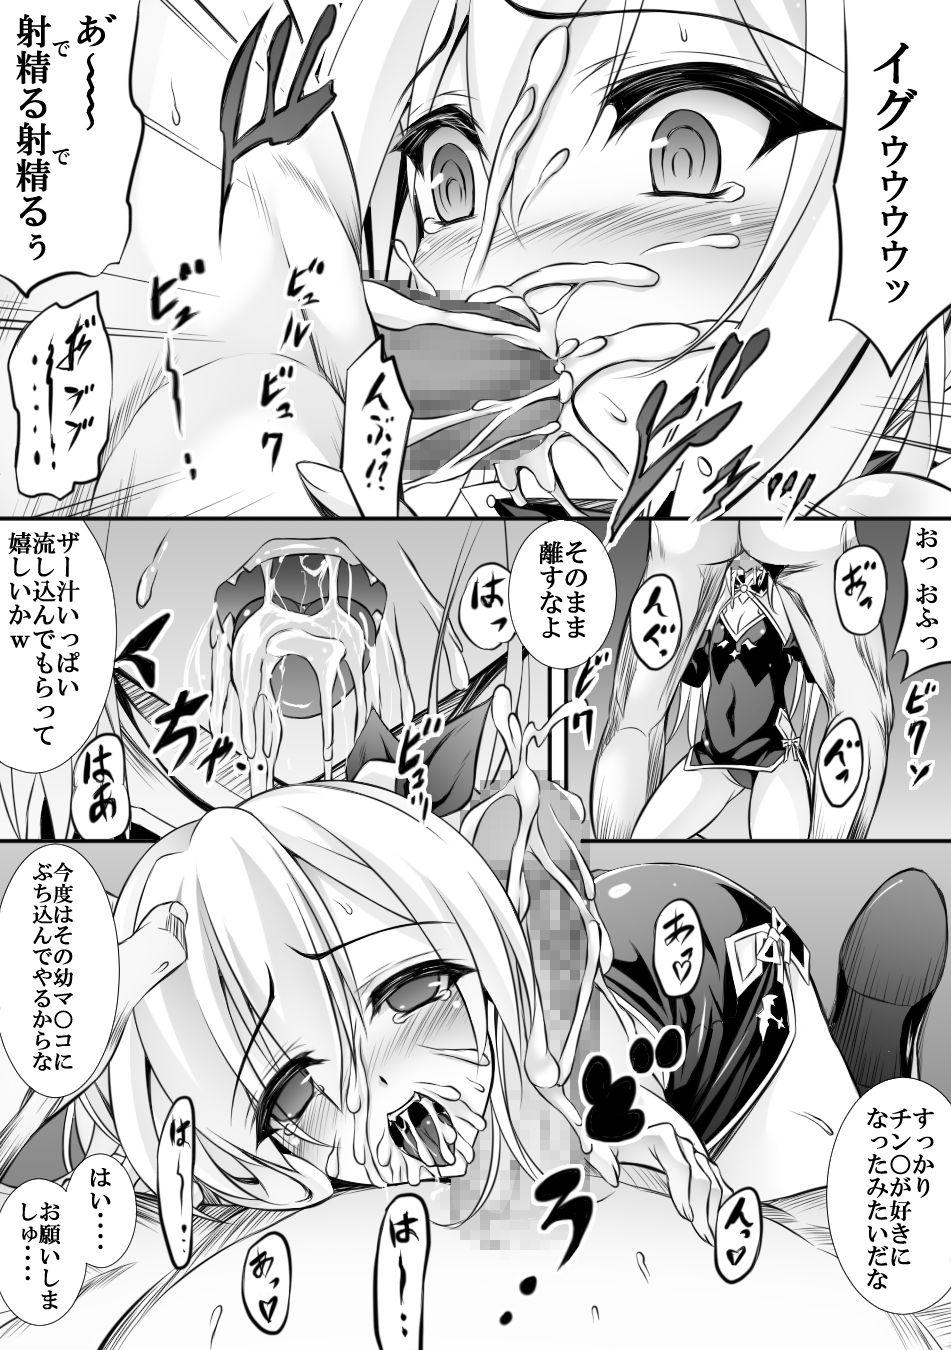 AzuLan 1 Page Manga 4